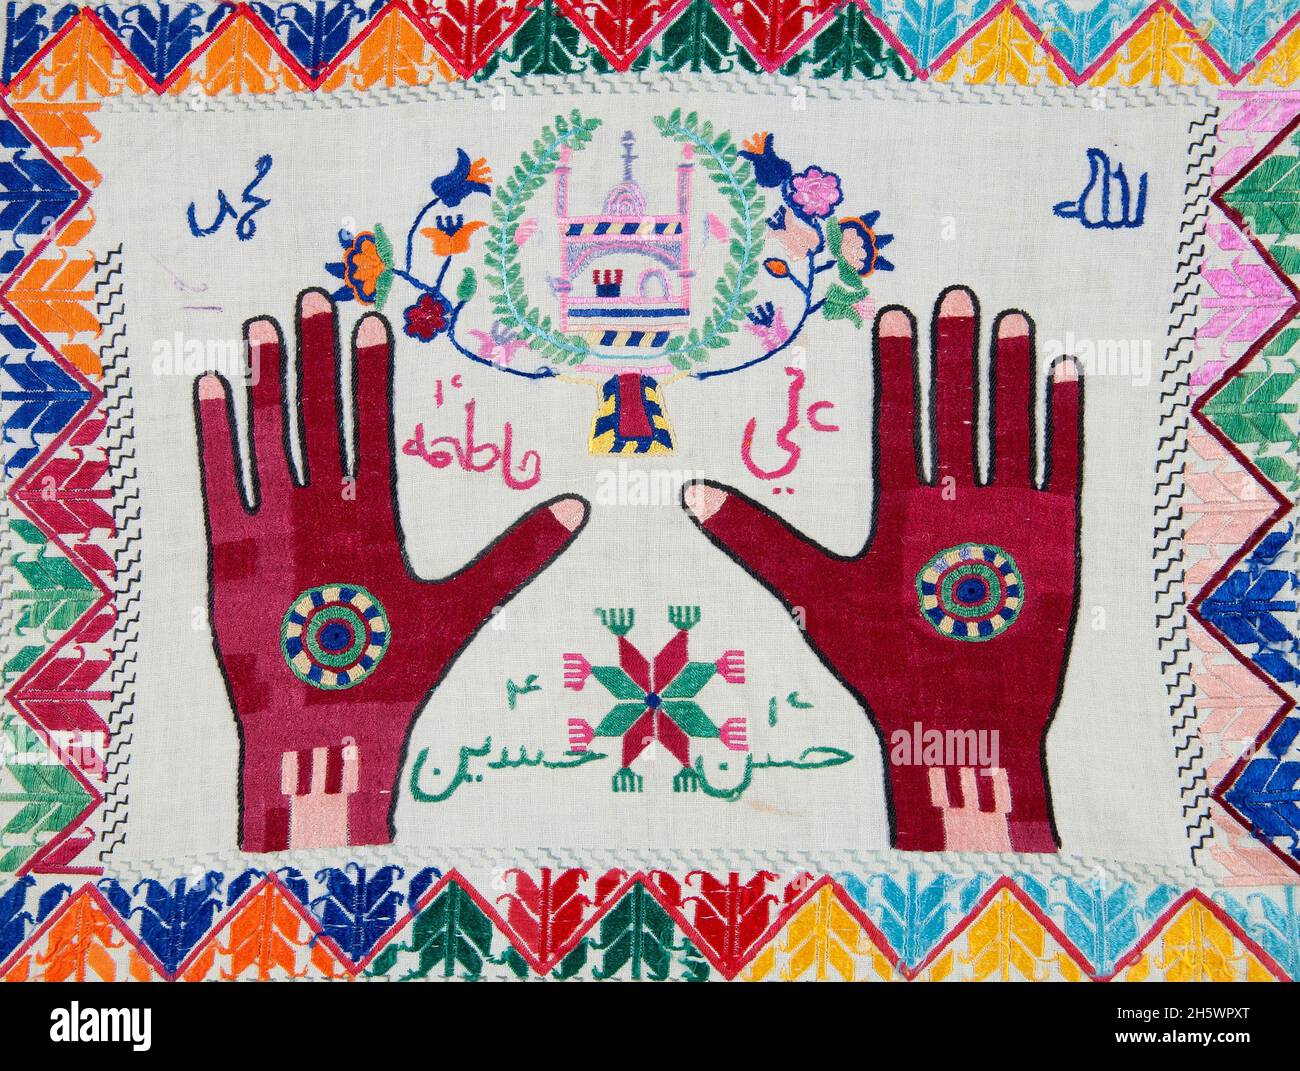 Detail des Hazara Gebetsteines Tuches Afghanistan. Besticktes Tuch mit Motiven einschließlich Händen; Moschee; arabische Schriftzeichen. Gebetssteintücher werden verwendet, um den Gebetsstein (mohr oder turba) zu halten, der von schiitischen muslimen verwendet wird. Die Gebetssteine sind aus gebranntem Ton aus Karbala. Die Gebetssteine werden in die Tücher im Haus oder am Körper eingewickelt gehalten. Beim Beten legt man das Gebetstuch auf den Gebetsteppich. Stockfoto